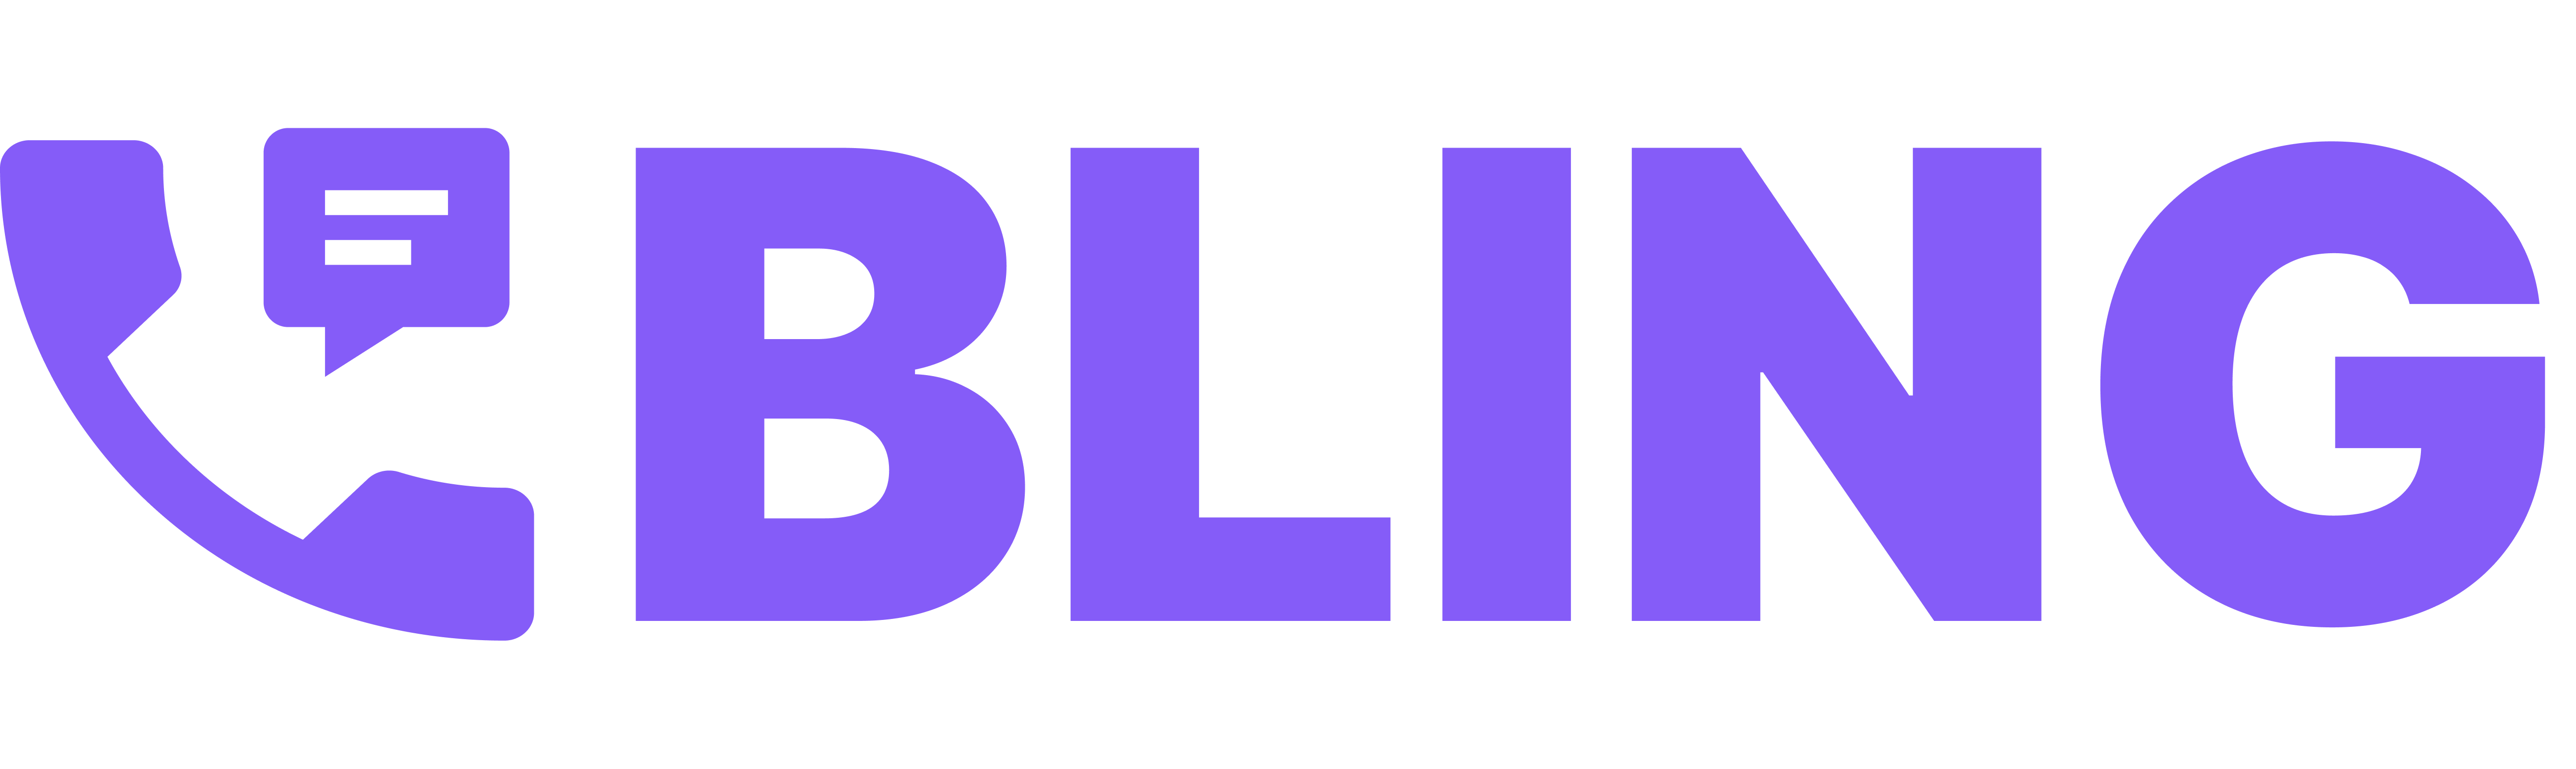 bling logo